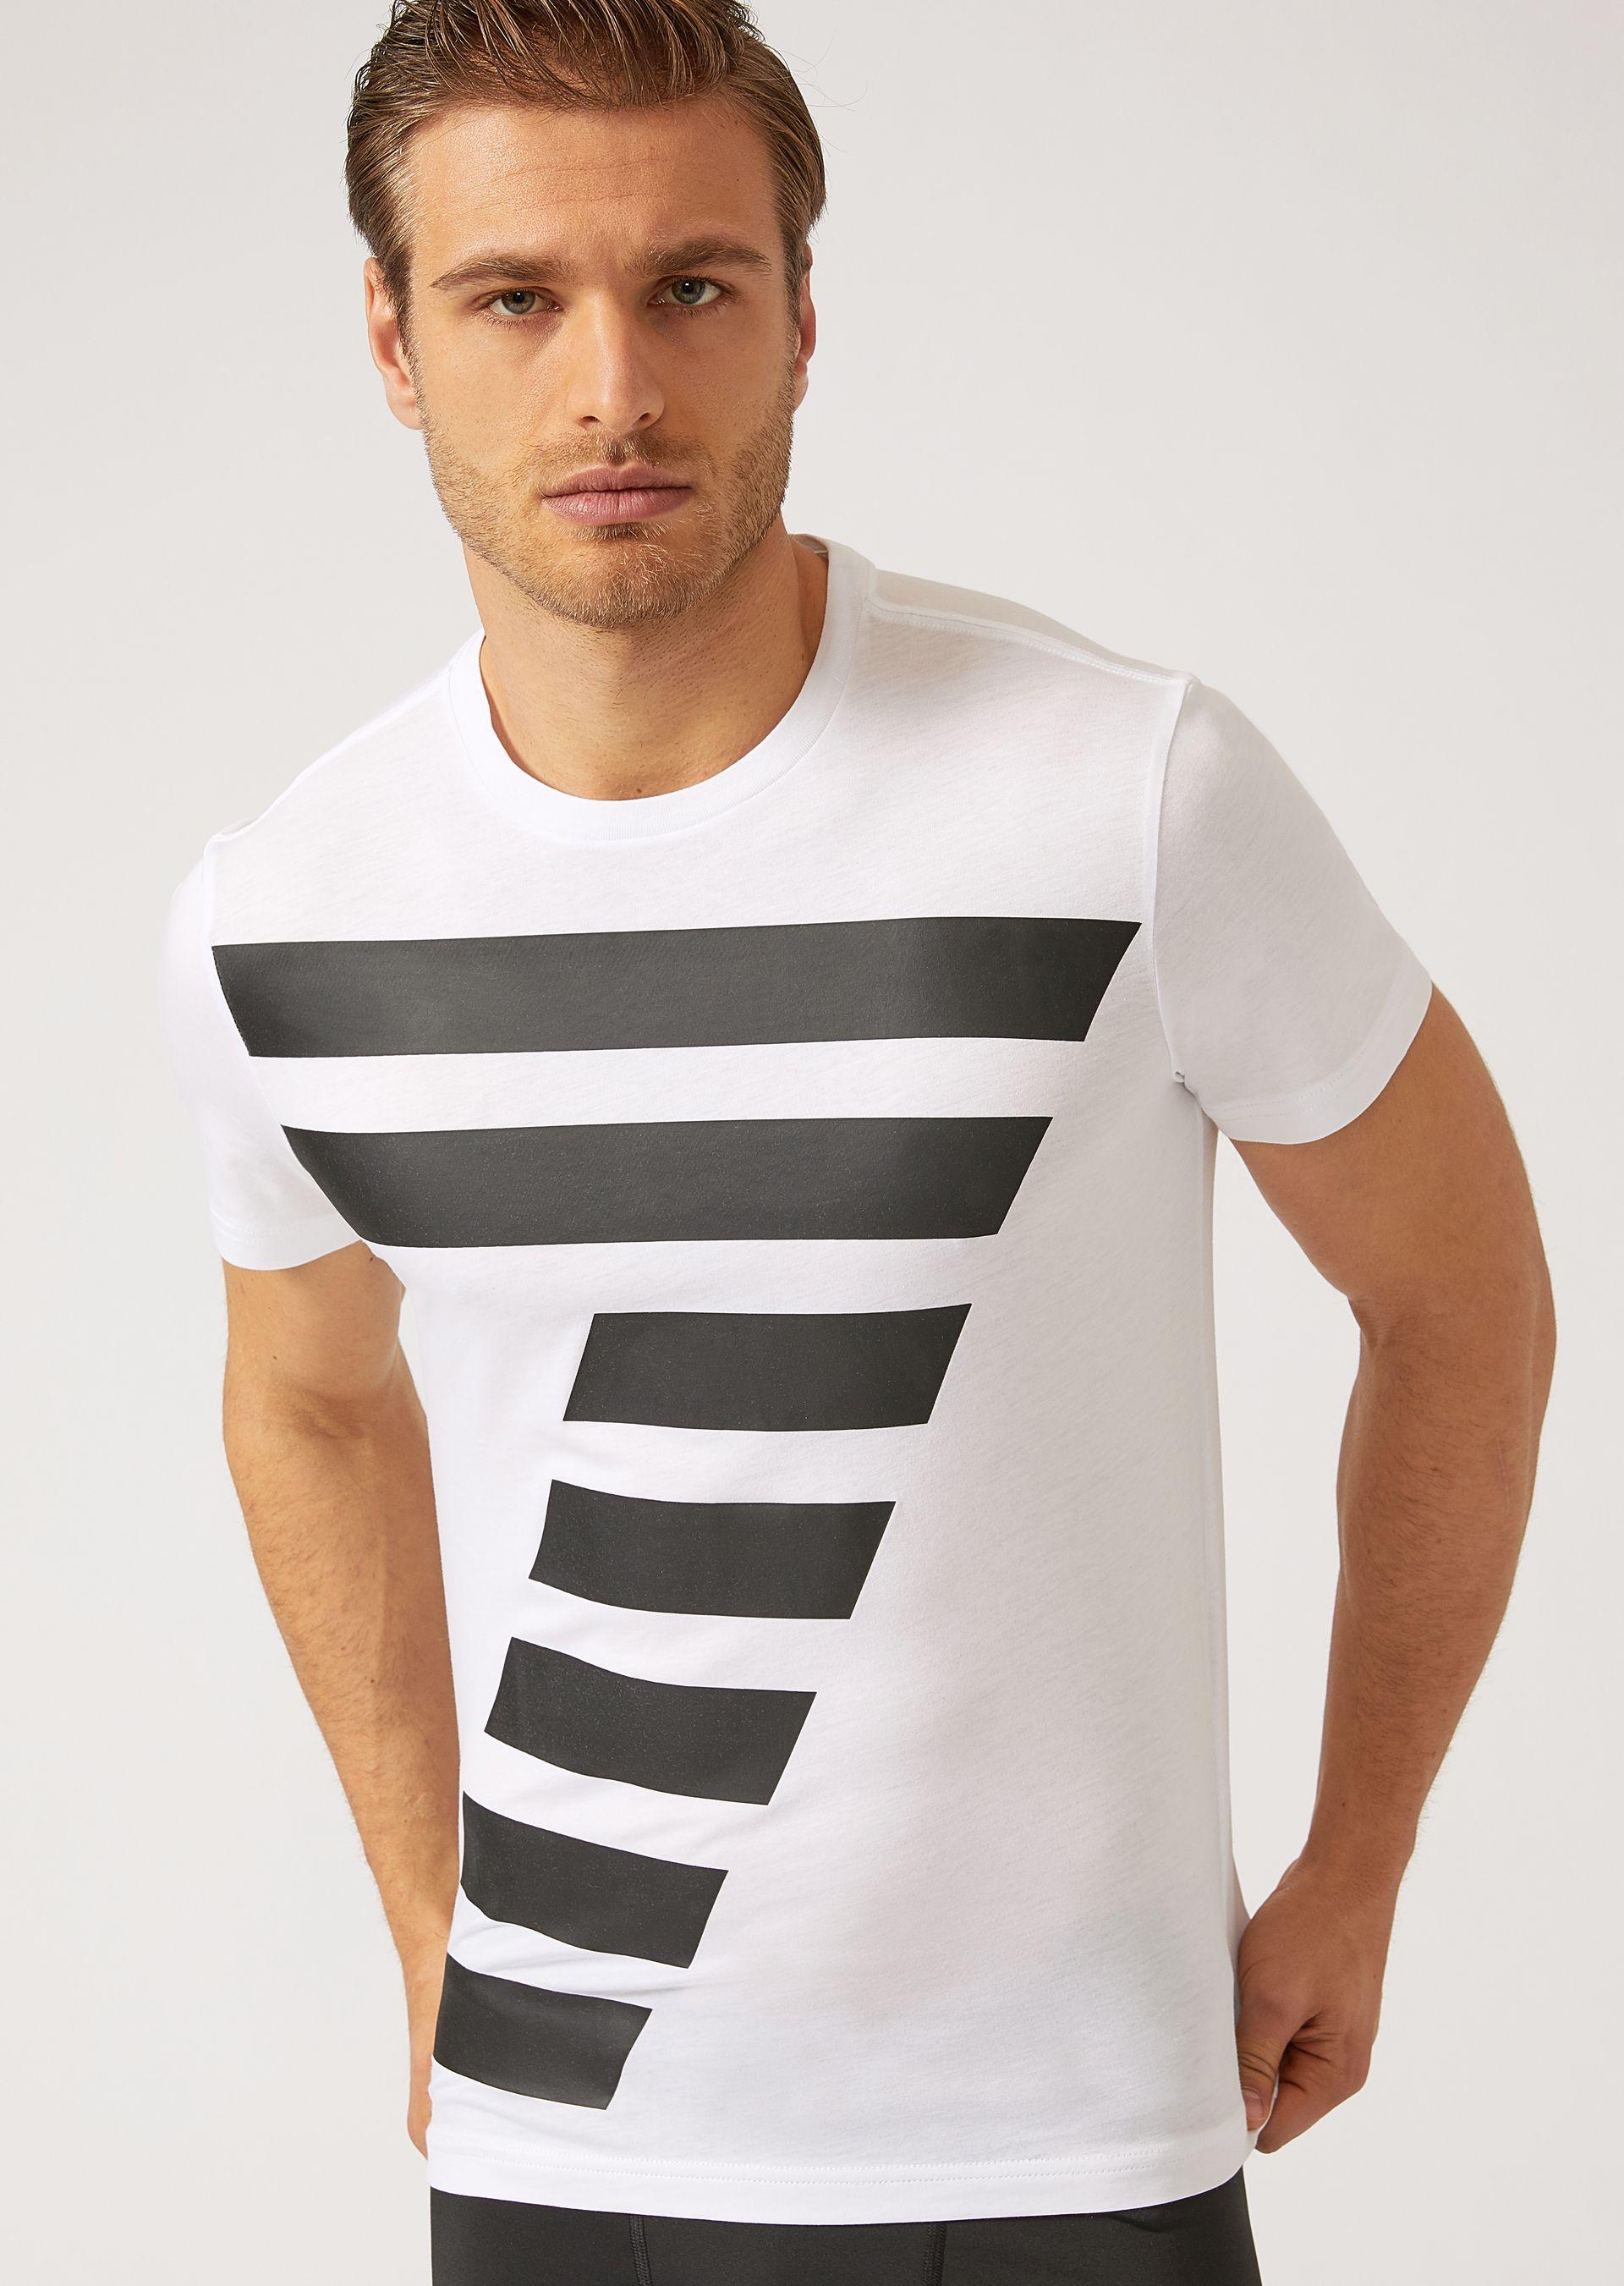 Emporio Armani T-shirts - Item 12131030 In Black ; White | ModeSens